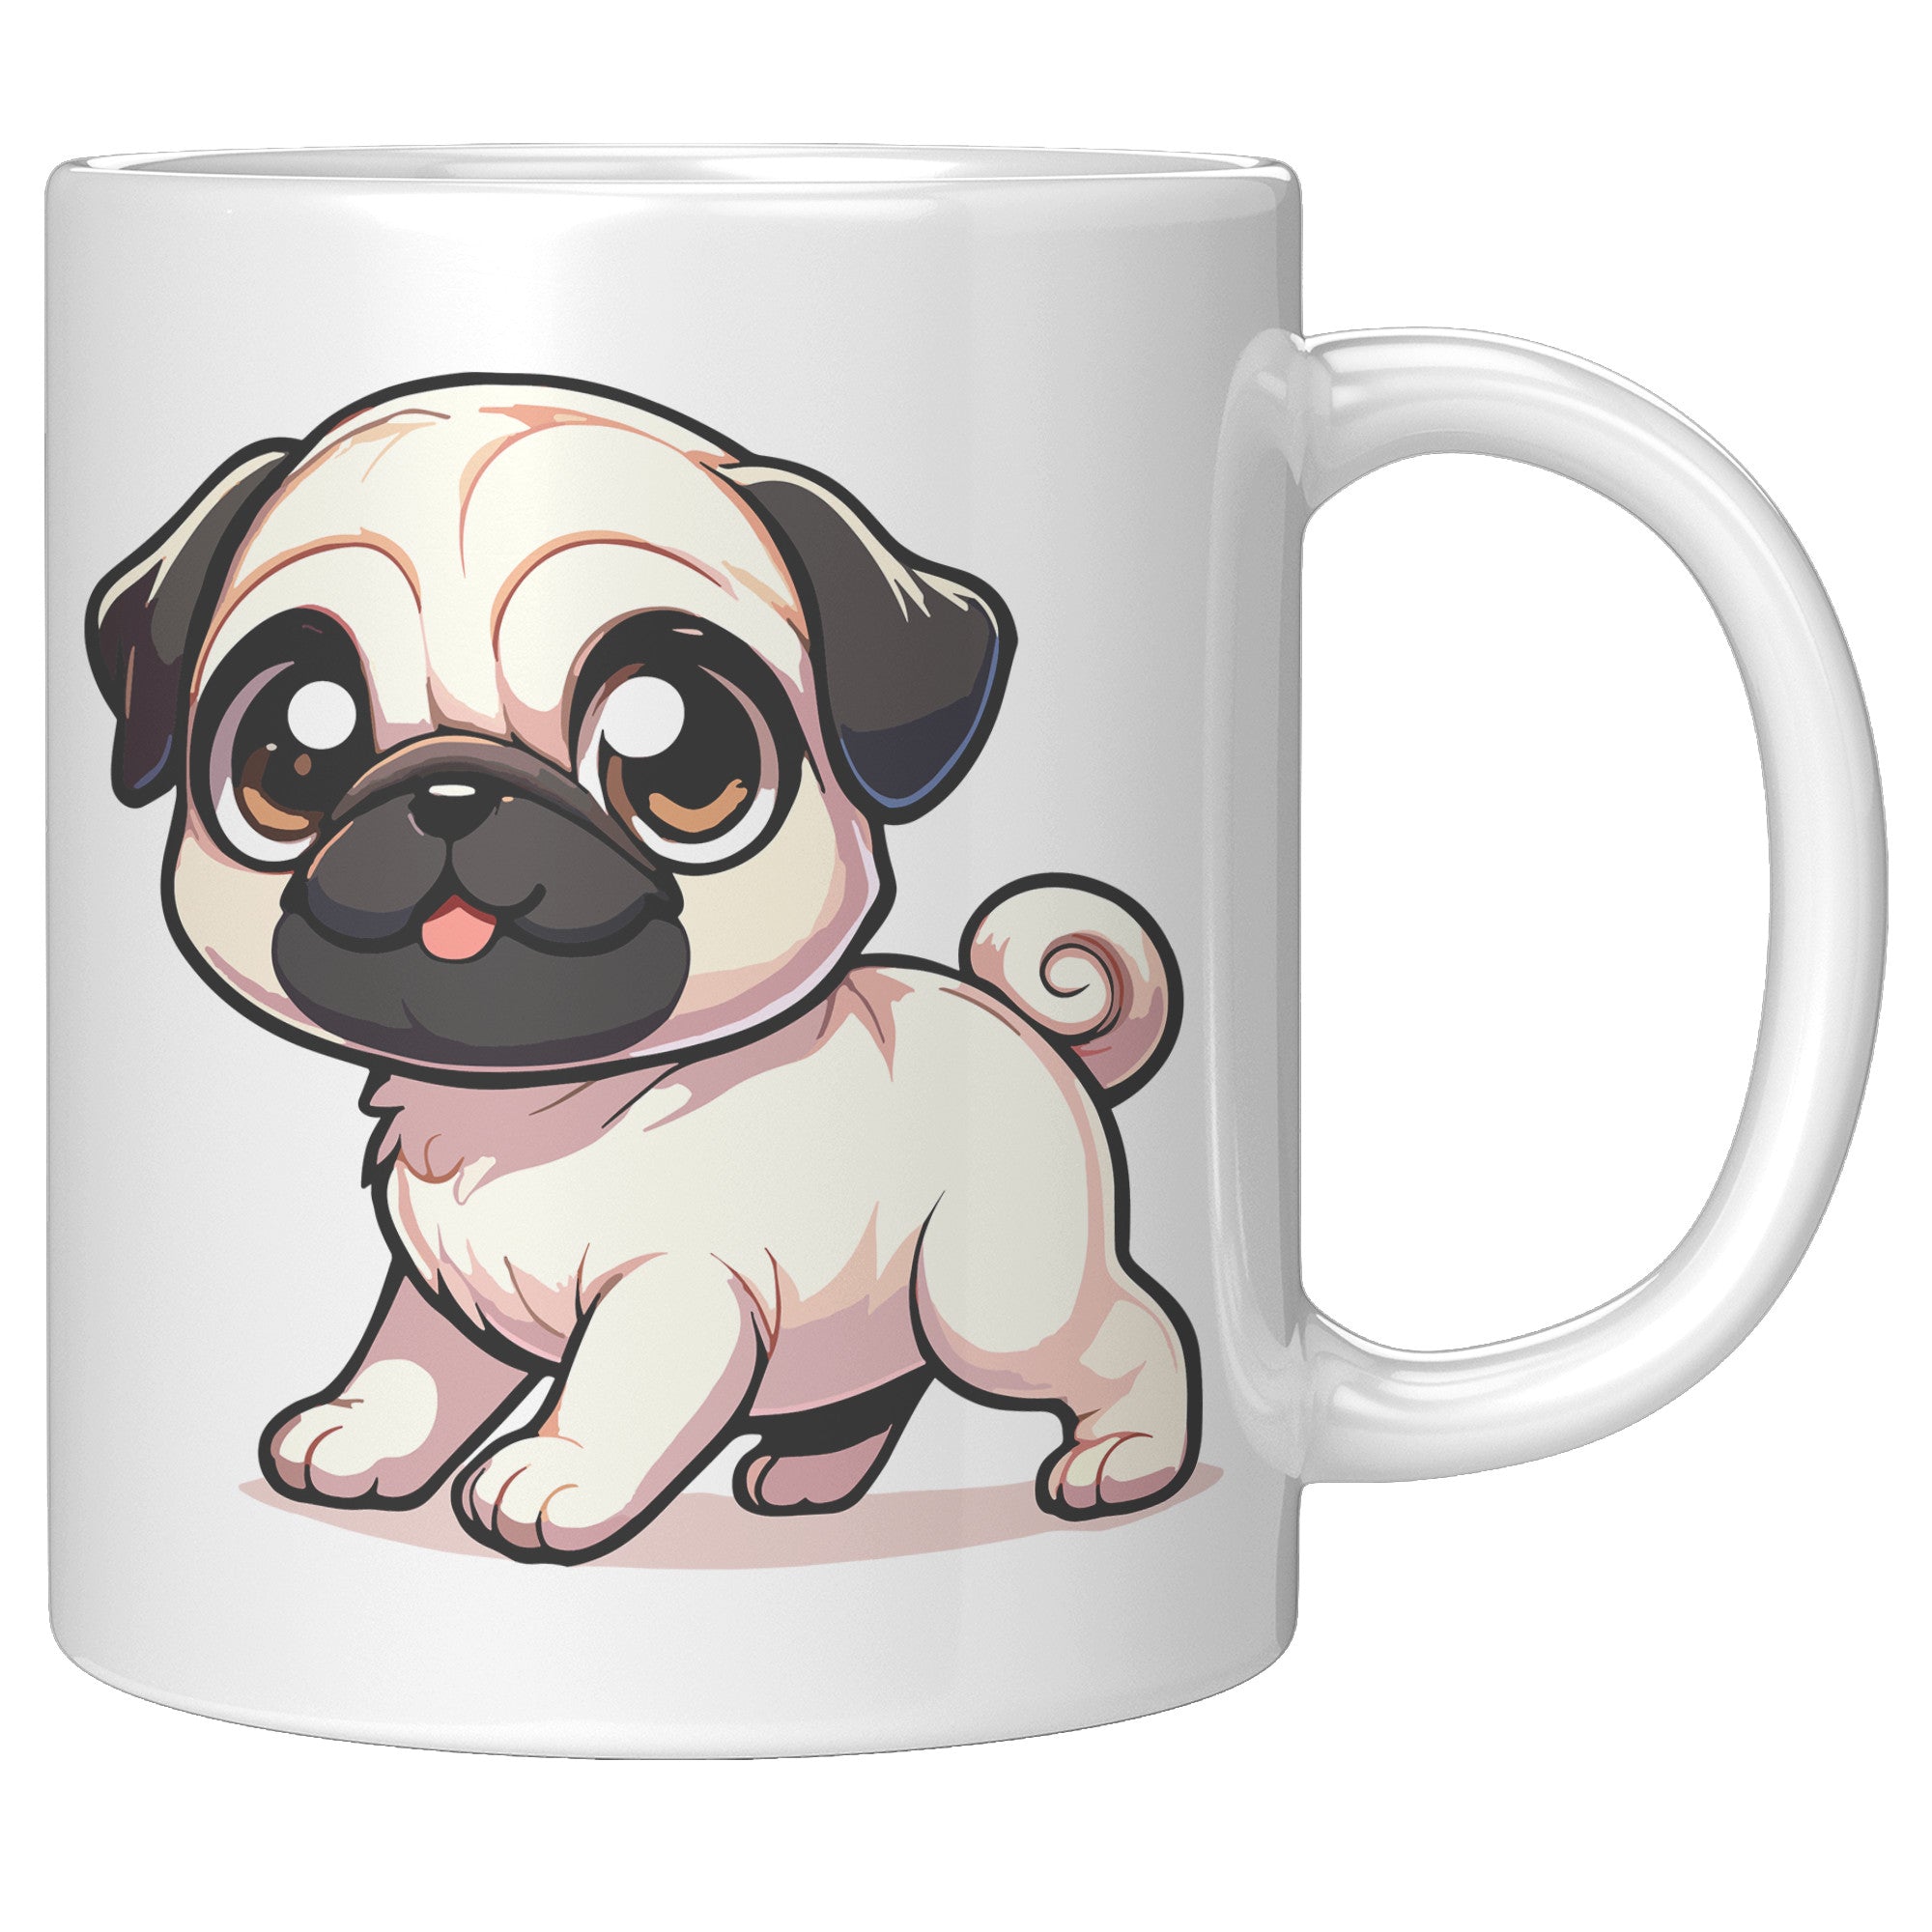 11oz Adorable Pug Cartoon Coffee Mug - Pug Lover Coffee Mug - Perfect Gift for Pug Owners - Cute Wrinkly Dog Coffee Mug" - R